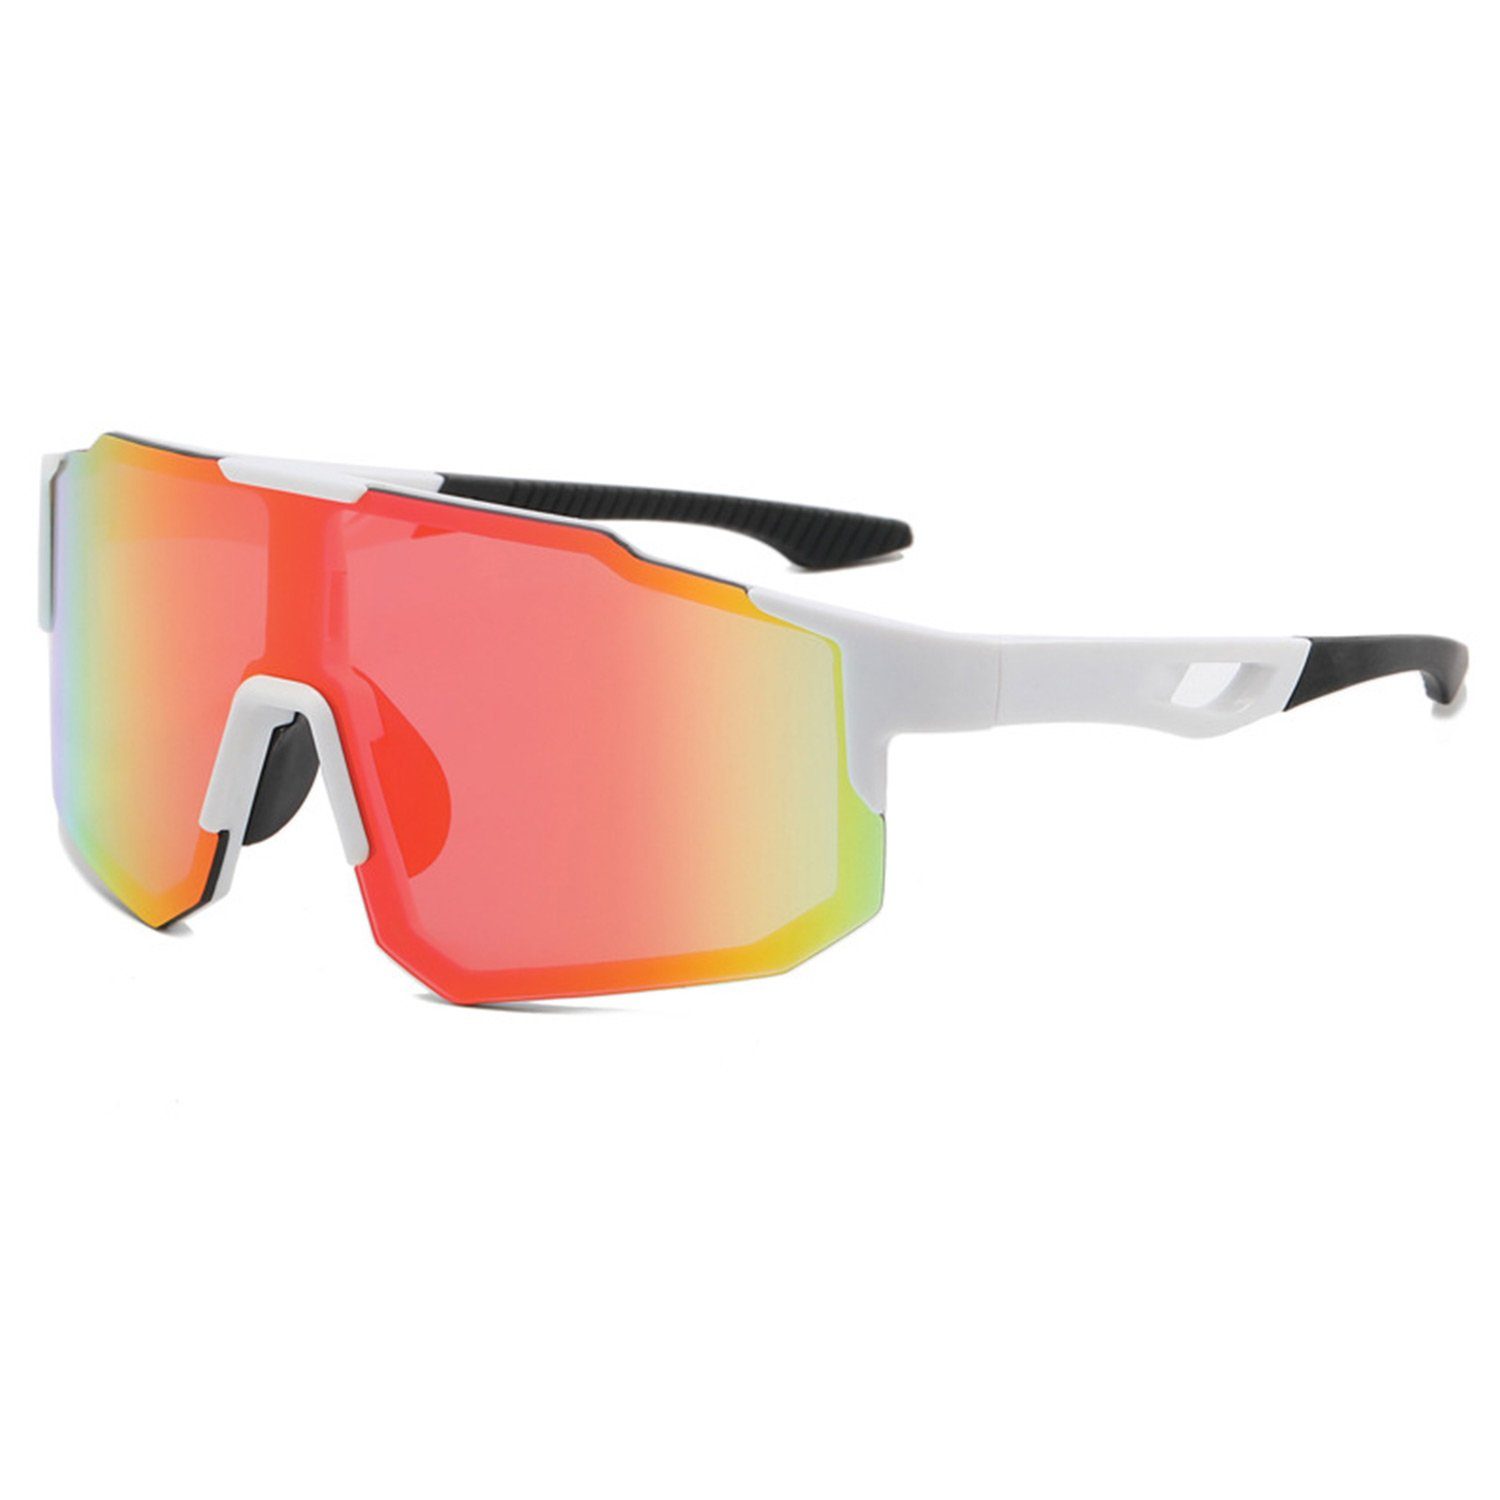 MAGICSHE Fahrradbrille Fahrradbrillen für Herren und Damen, Sport-Sonnenbrillen, Windschutzscheibe, UV-beständige und klare Sicht Brille Weißer roter Film | Fahrradbrillen